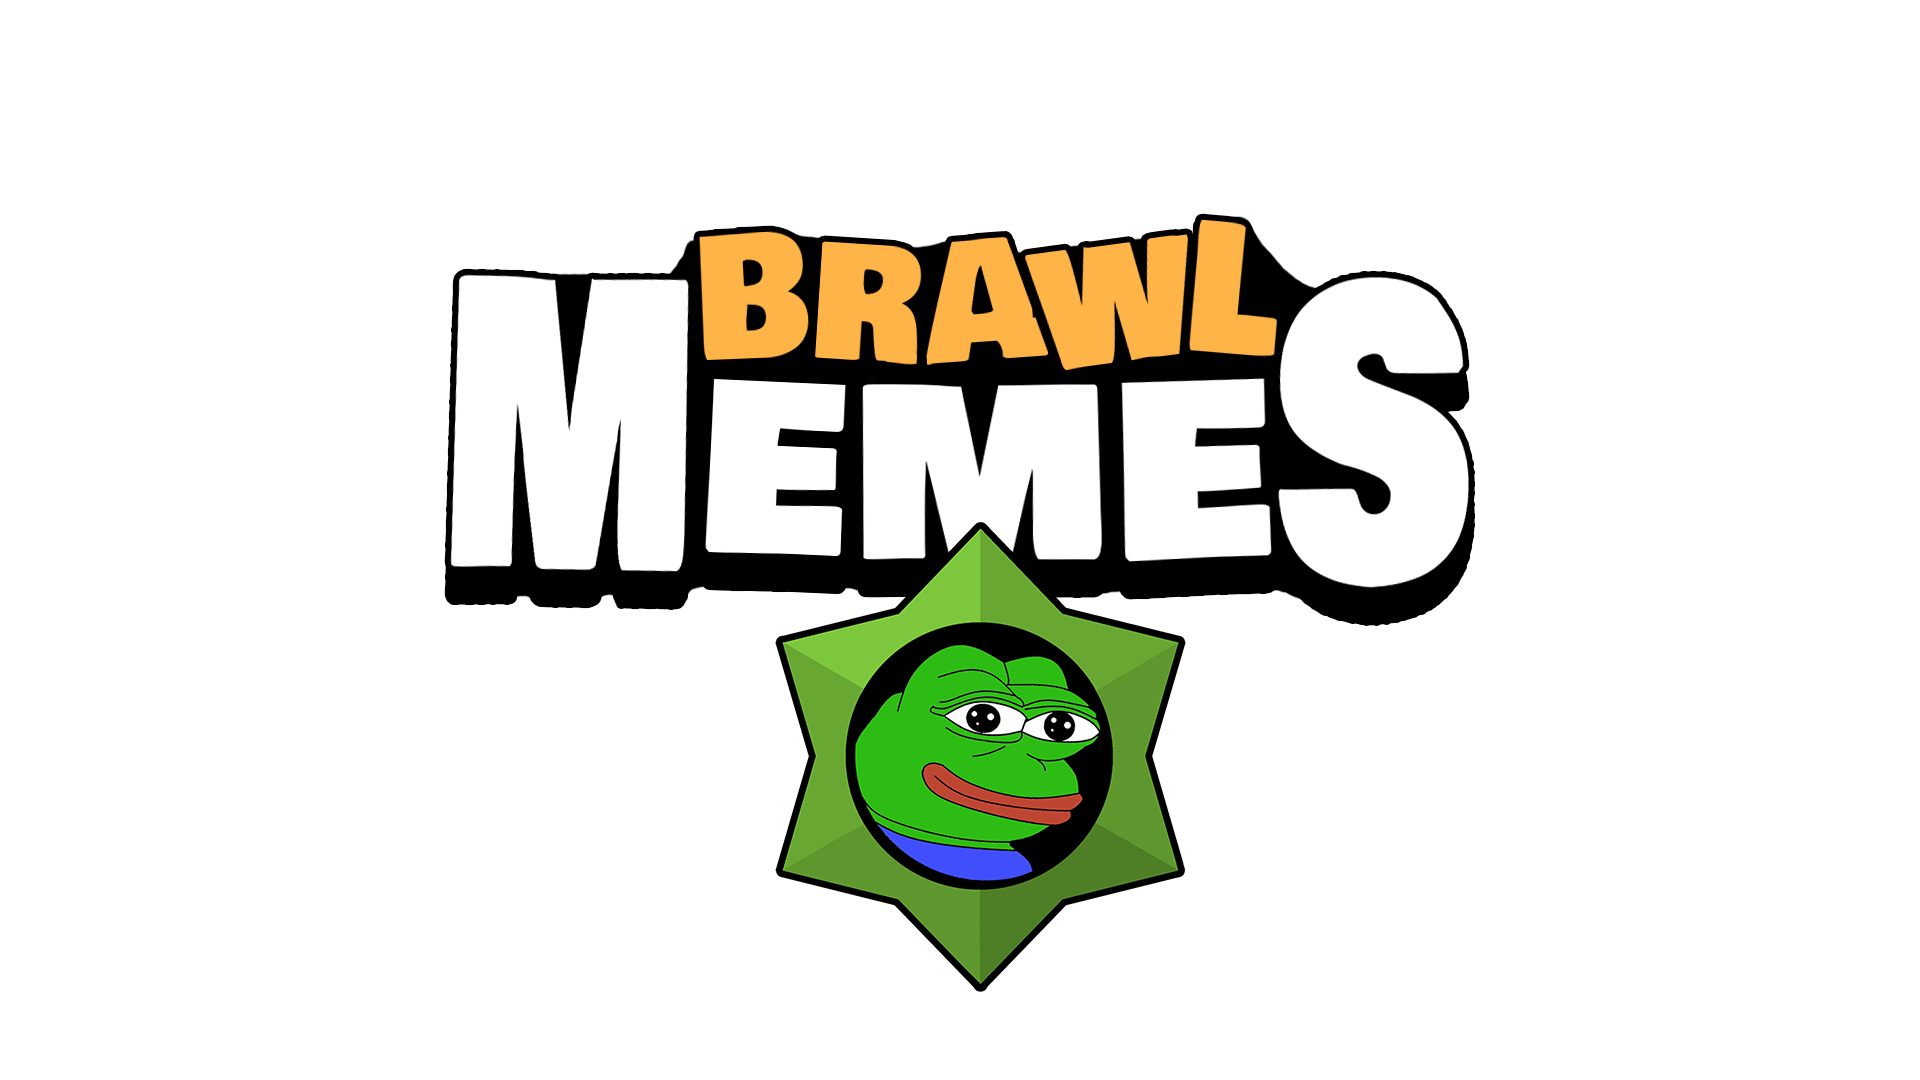 Brawl Memes - Battle of Meme